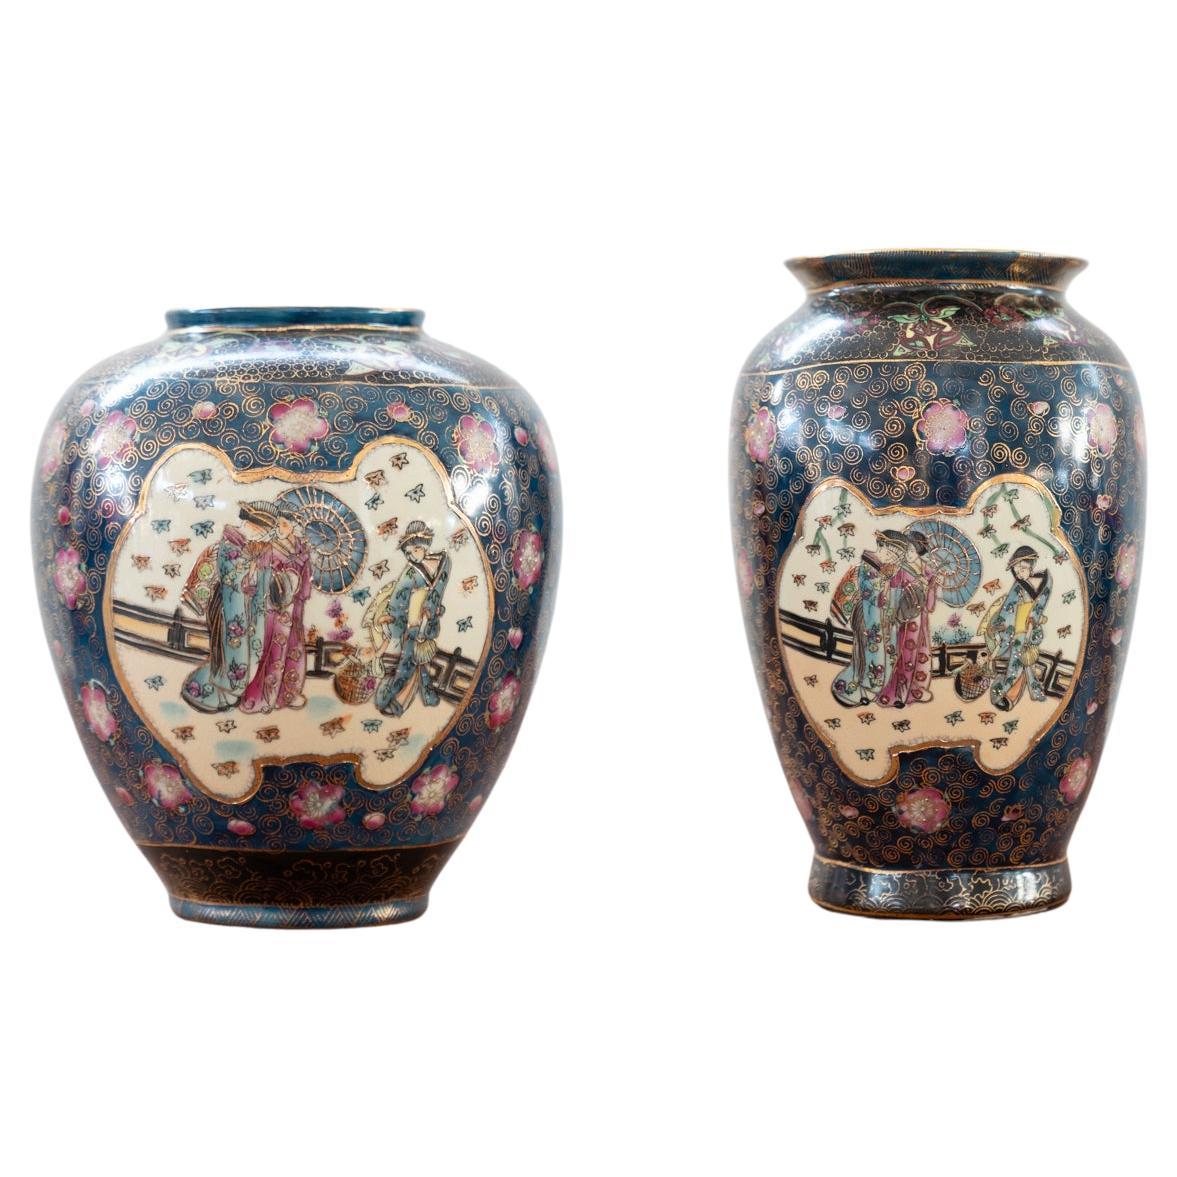 Japanese antique porcelain porcelain vases Meiji period 19th century